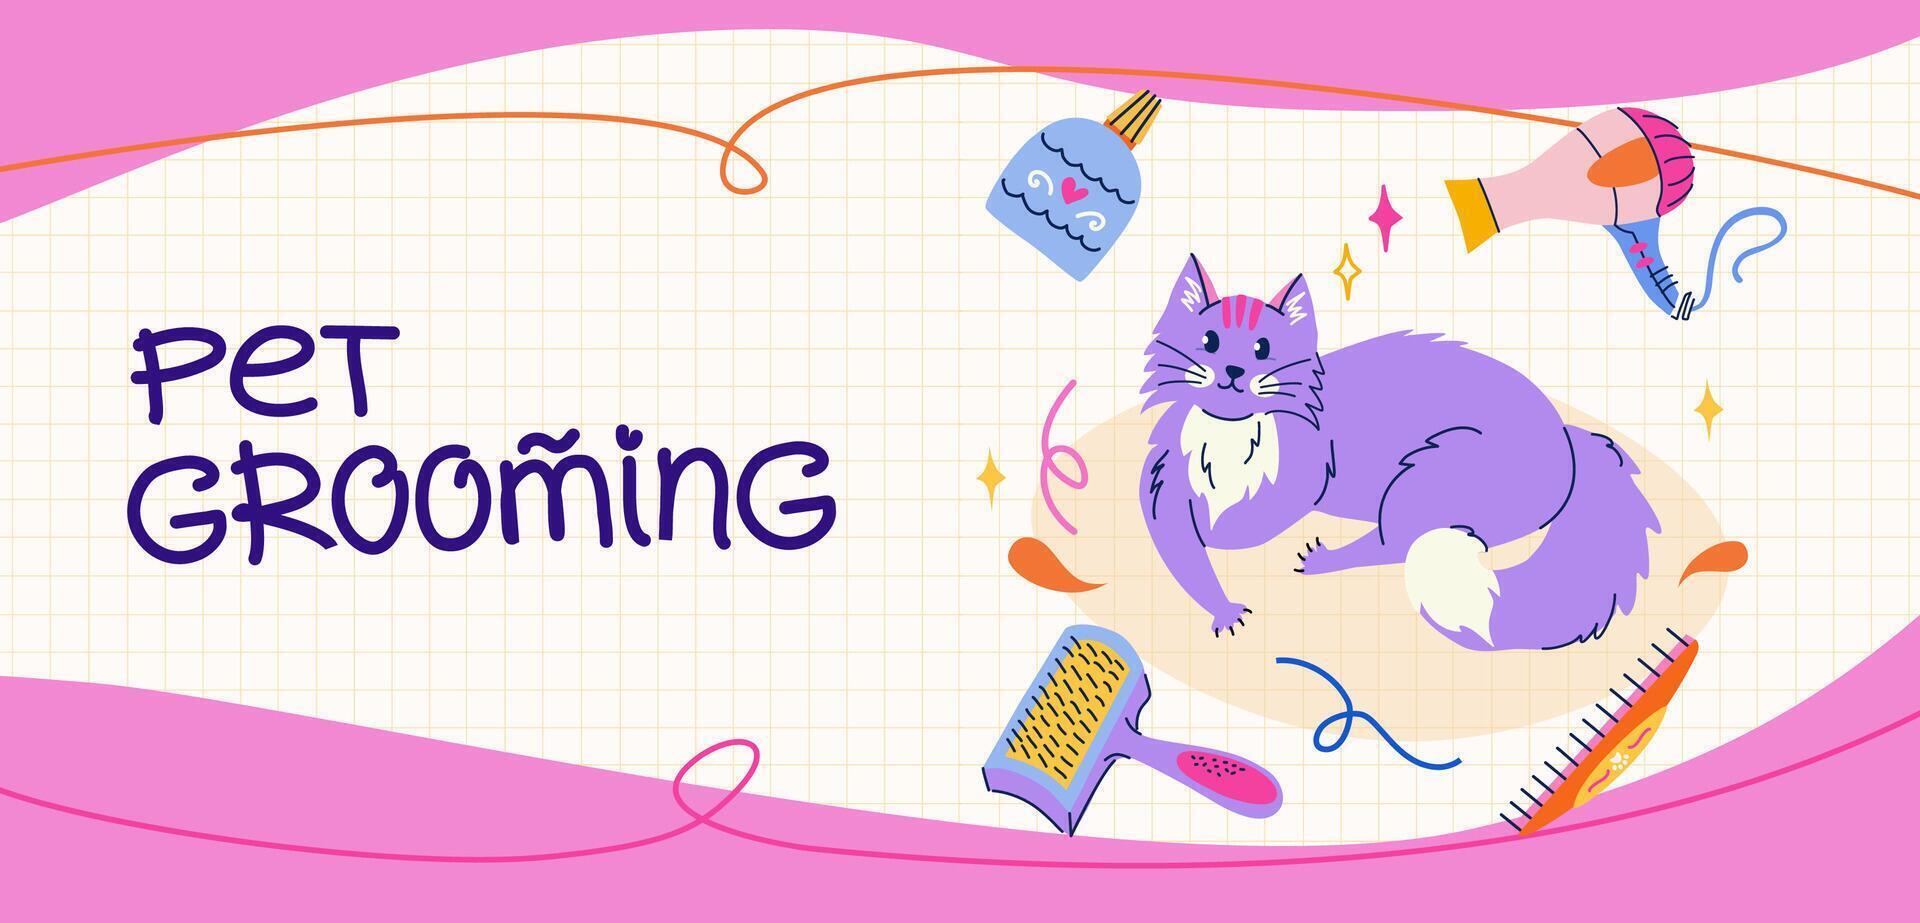 mascota aseo sitio web bandera diseño. linda acostado gato en plano de moda estilo. equipo y productos cosméticos para aseo. vector modelo con escrito tipografía